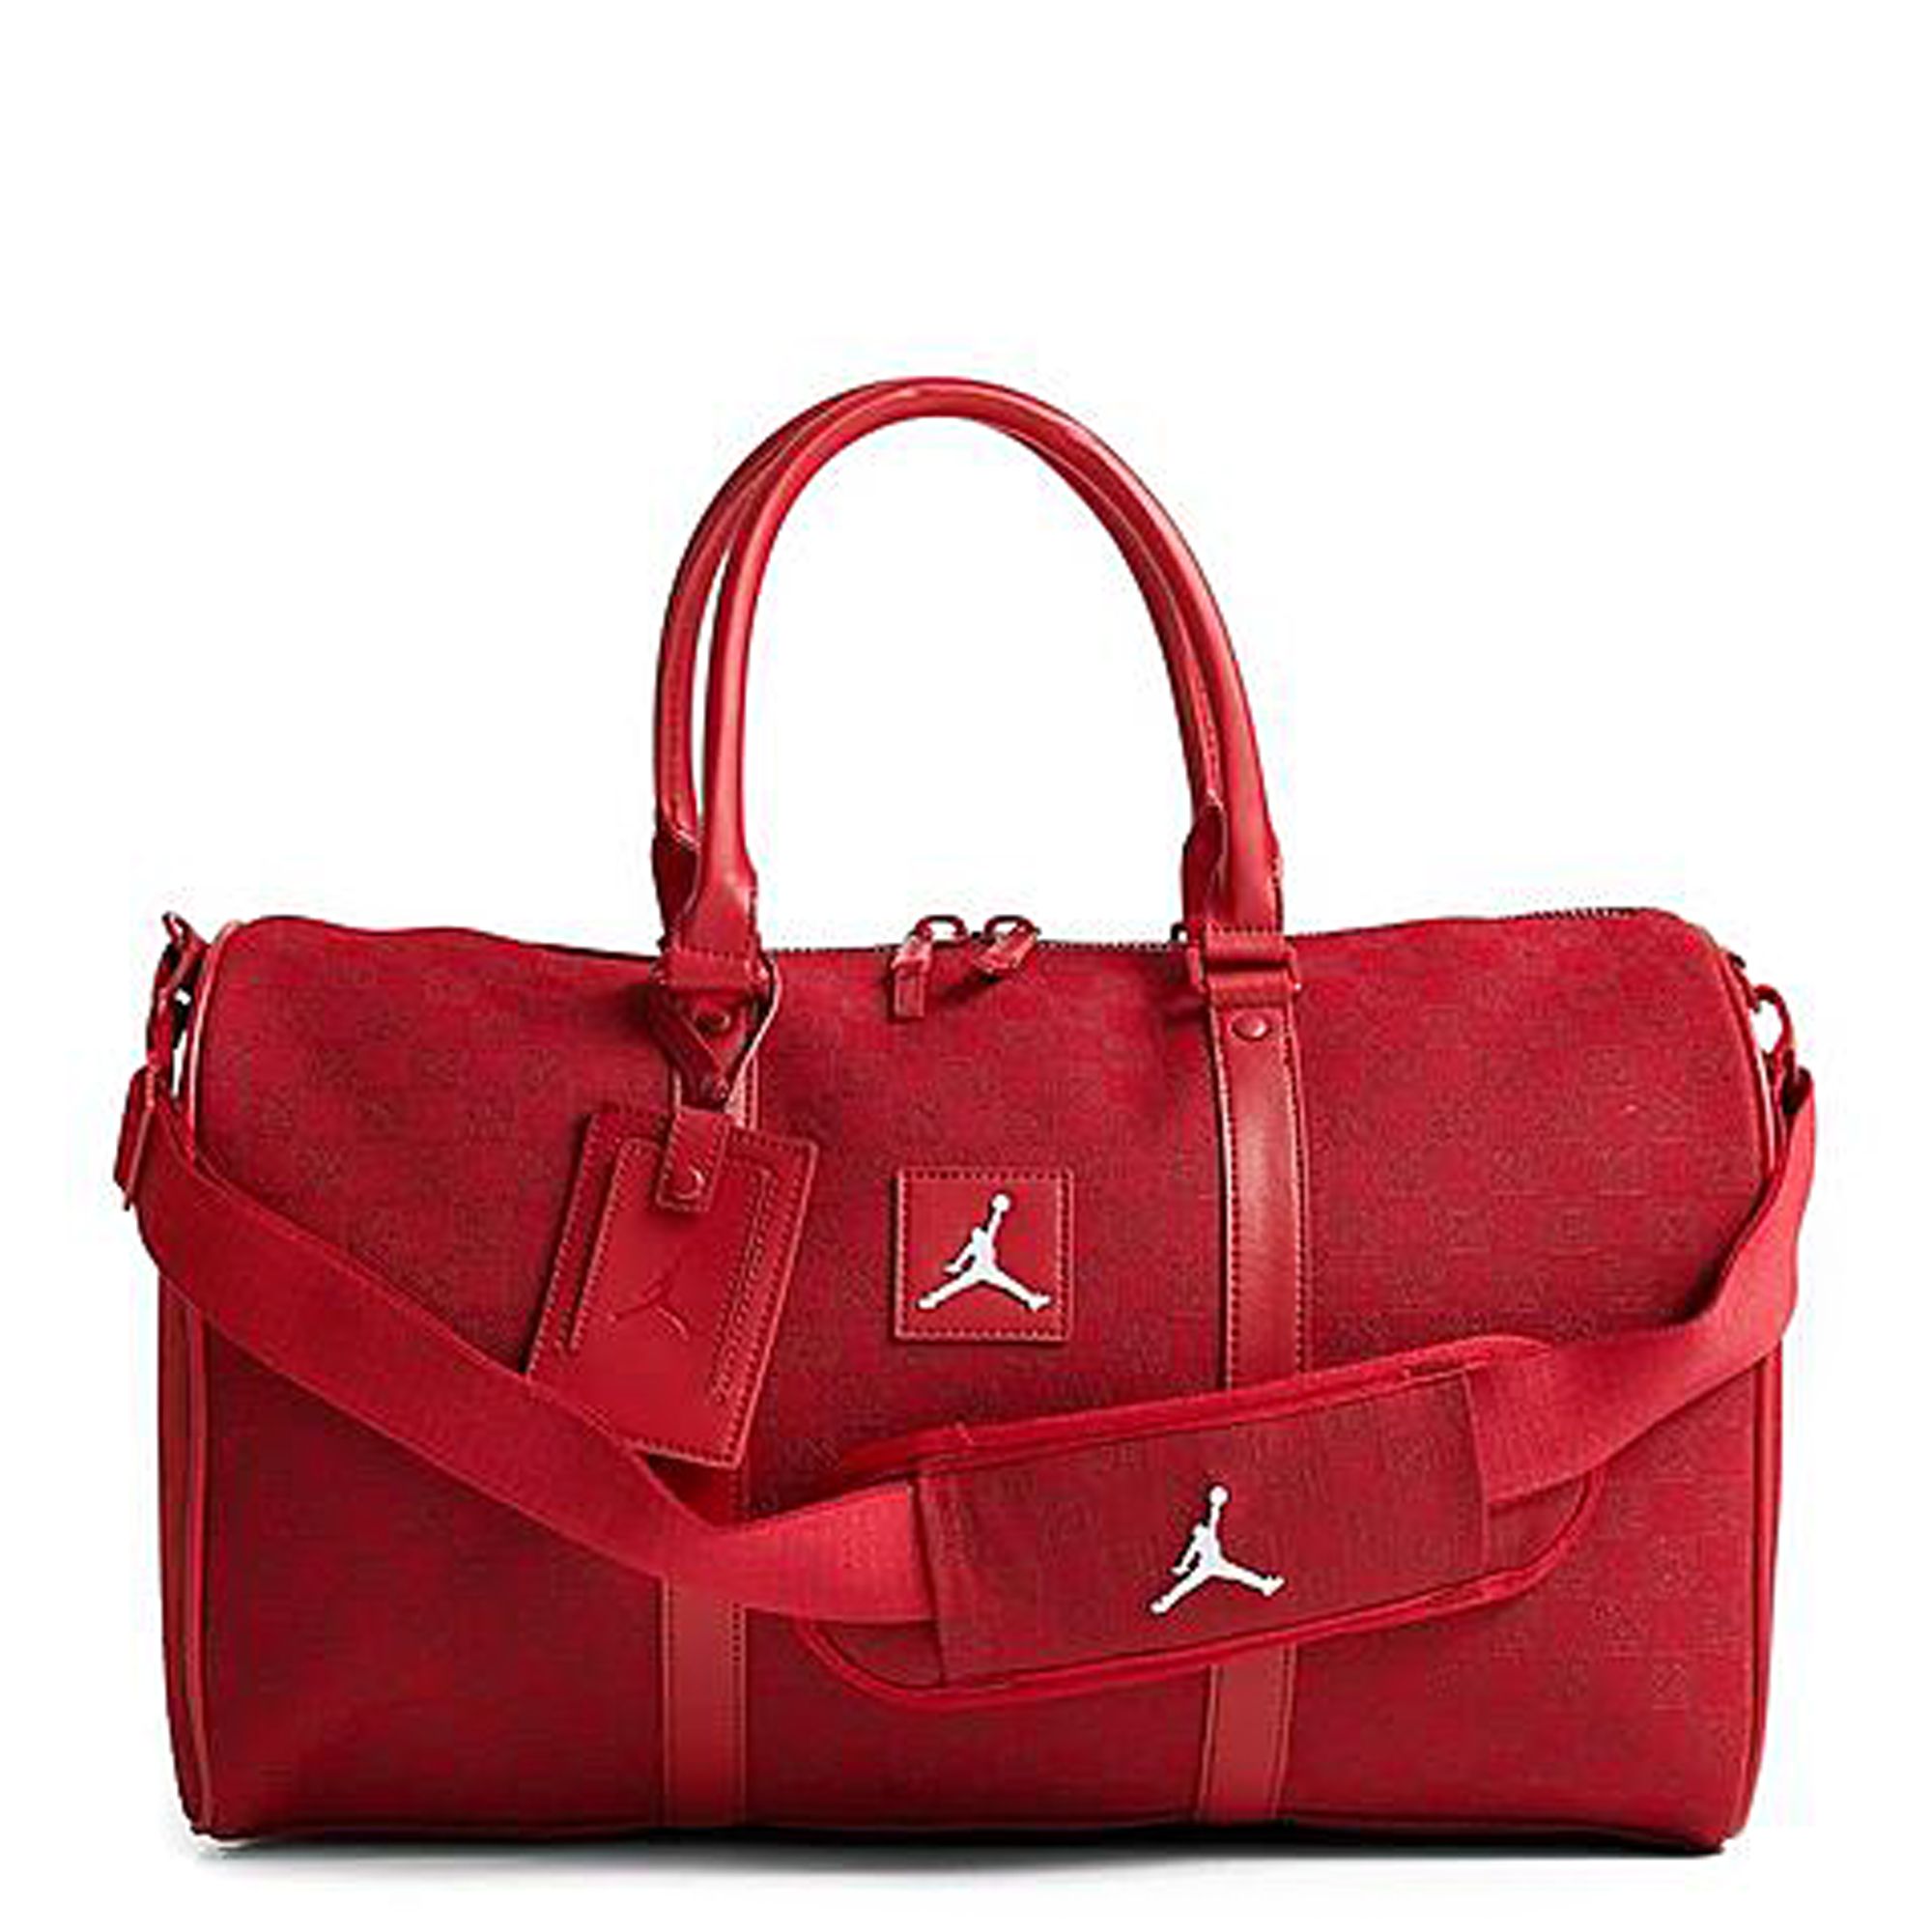 Jordan Jumpman Sport Duffel Bag